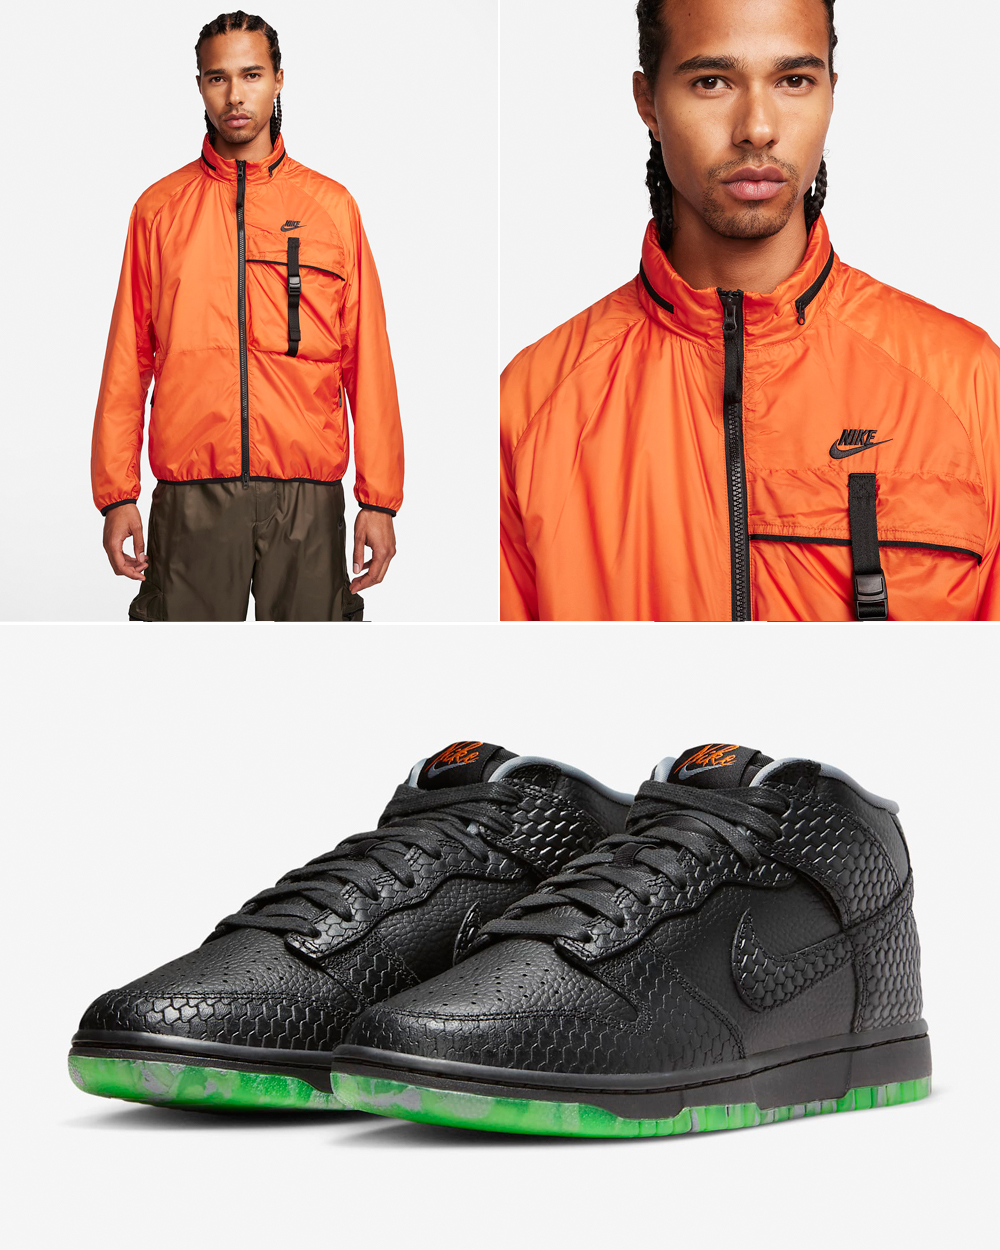 Nike-Dunk-Mid-Halloween-Jacket